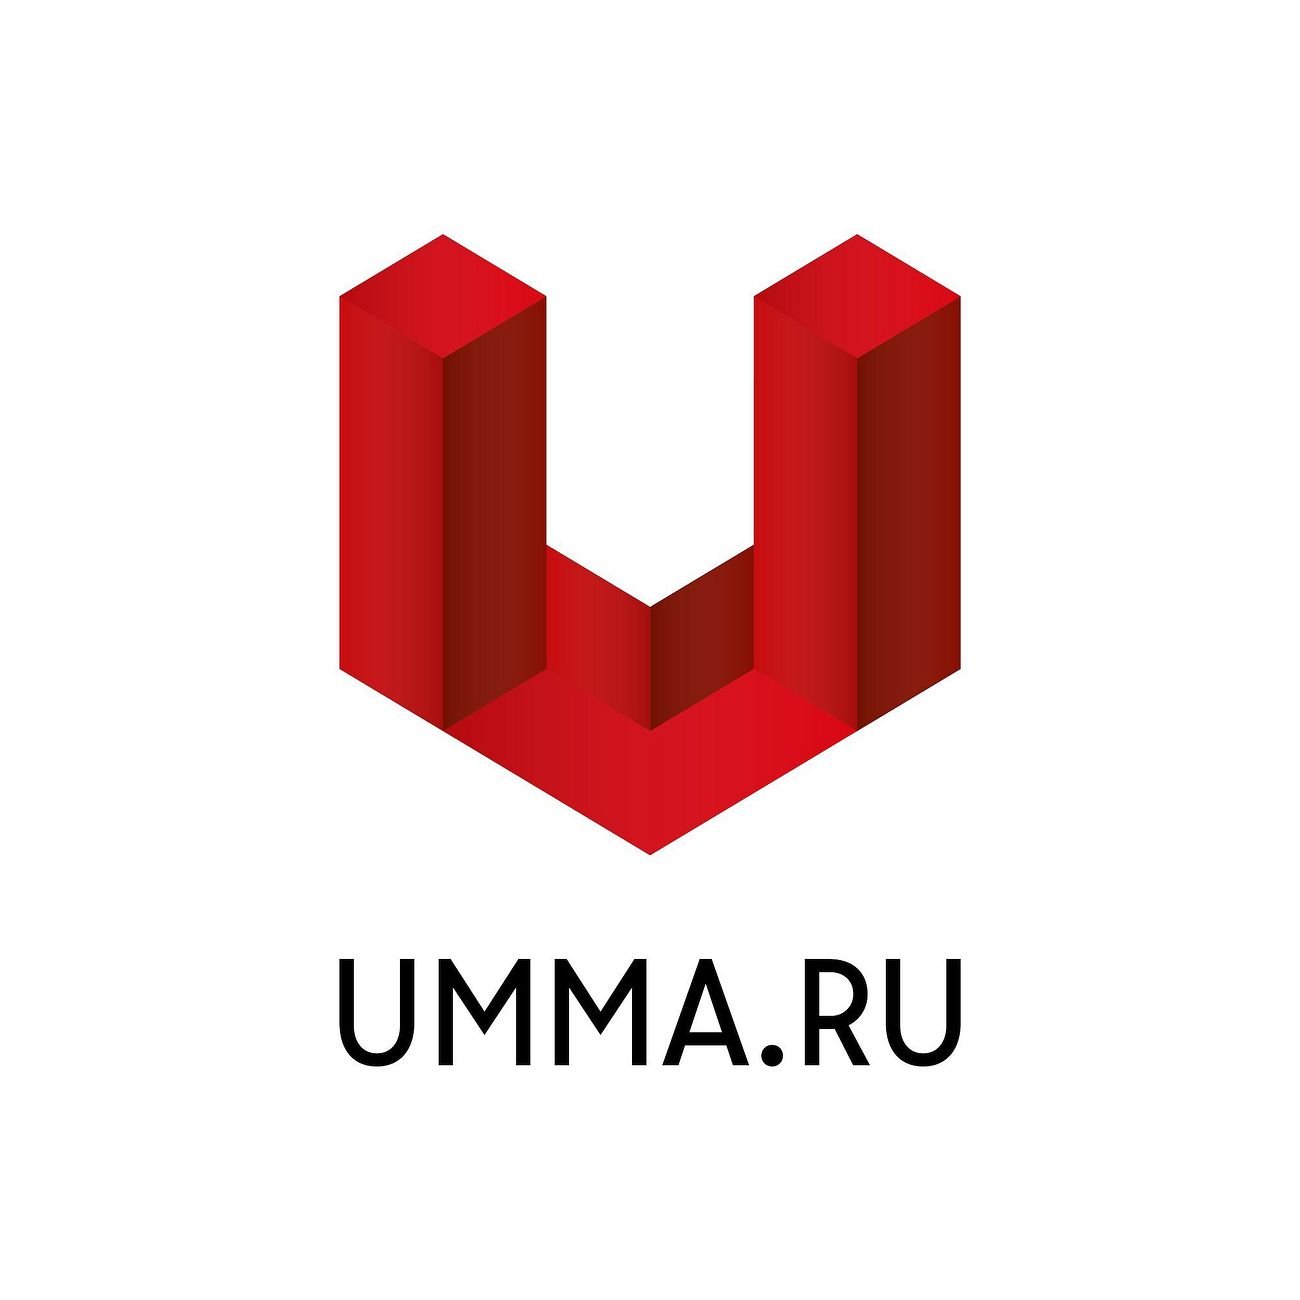 umma.ru - достоверно об Исламе